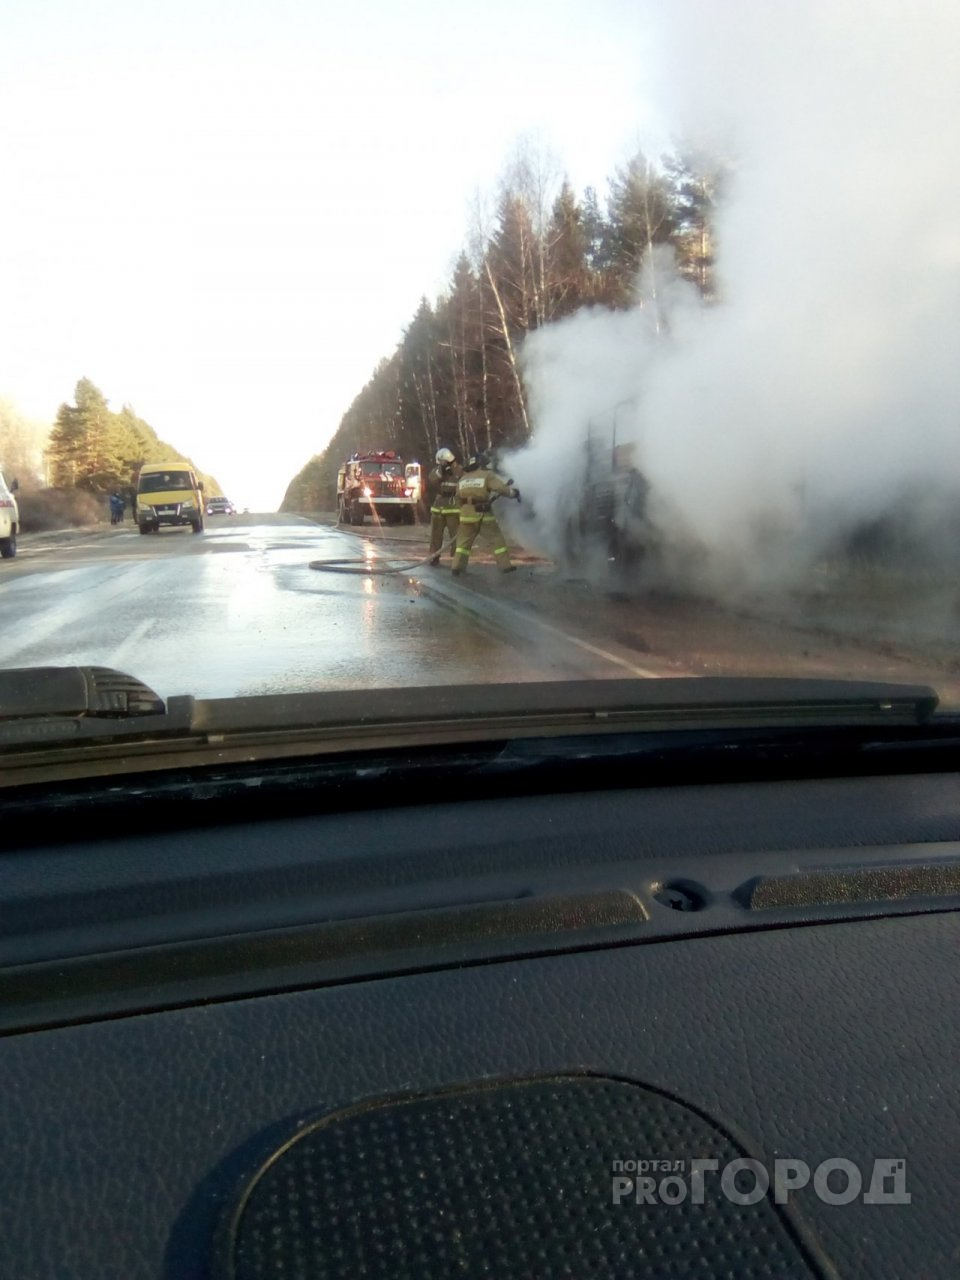 Дорога в дыму: на трассе в Марий Эл сгорела машина